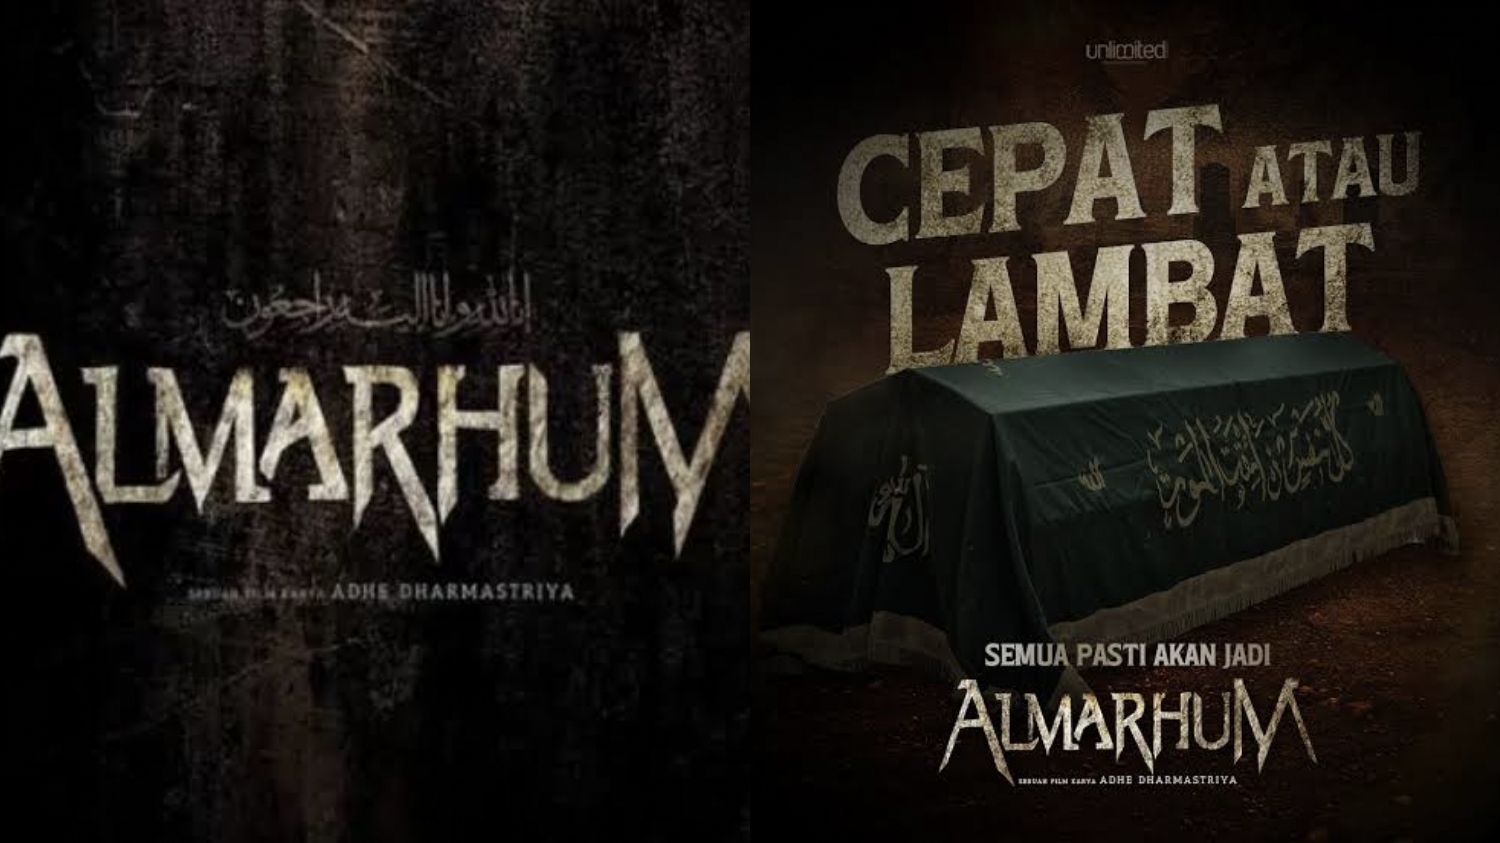 Film Horor Almarhum, Menggugah Ketakutan dan Pesan Spiritual